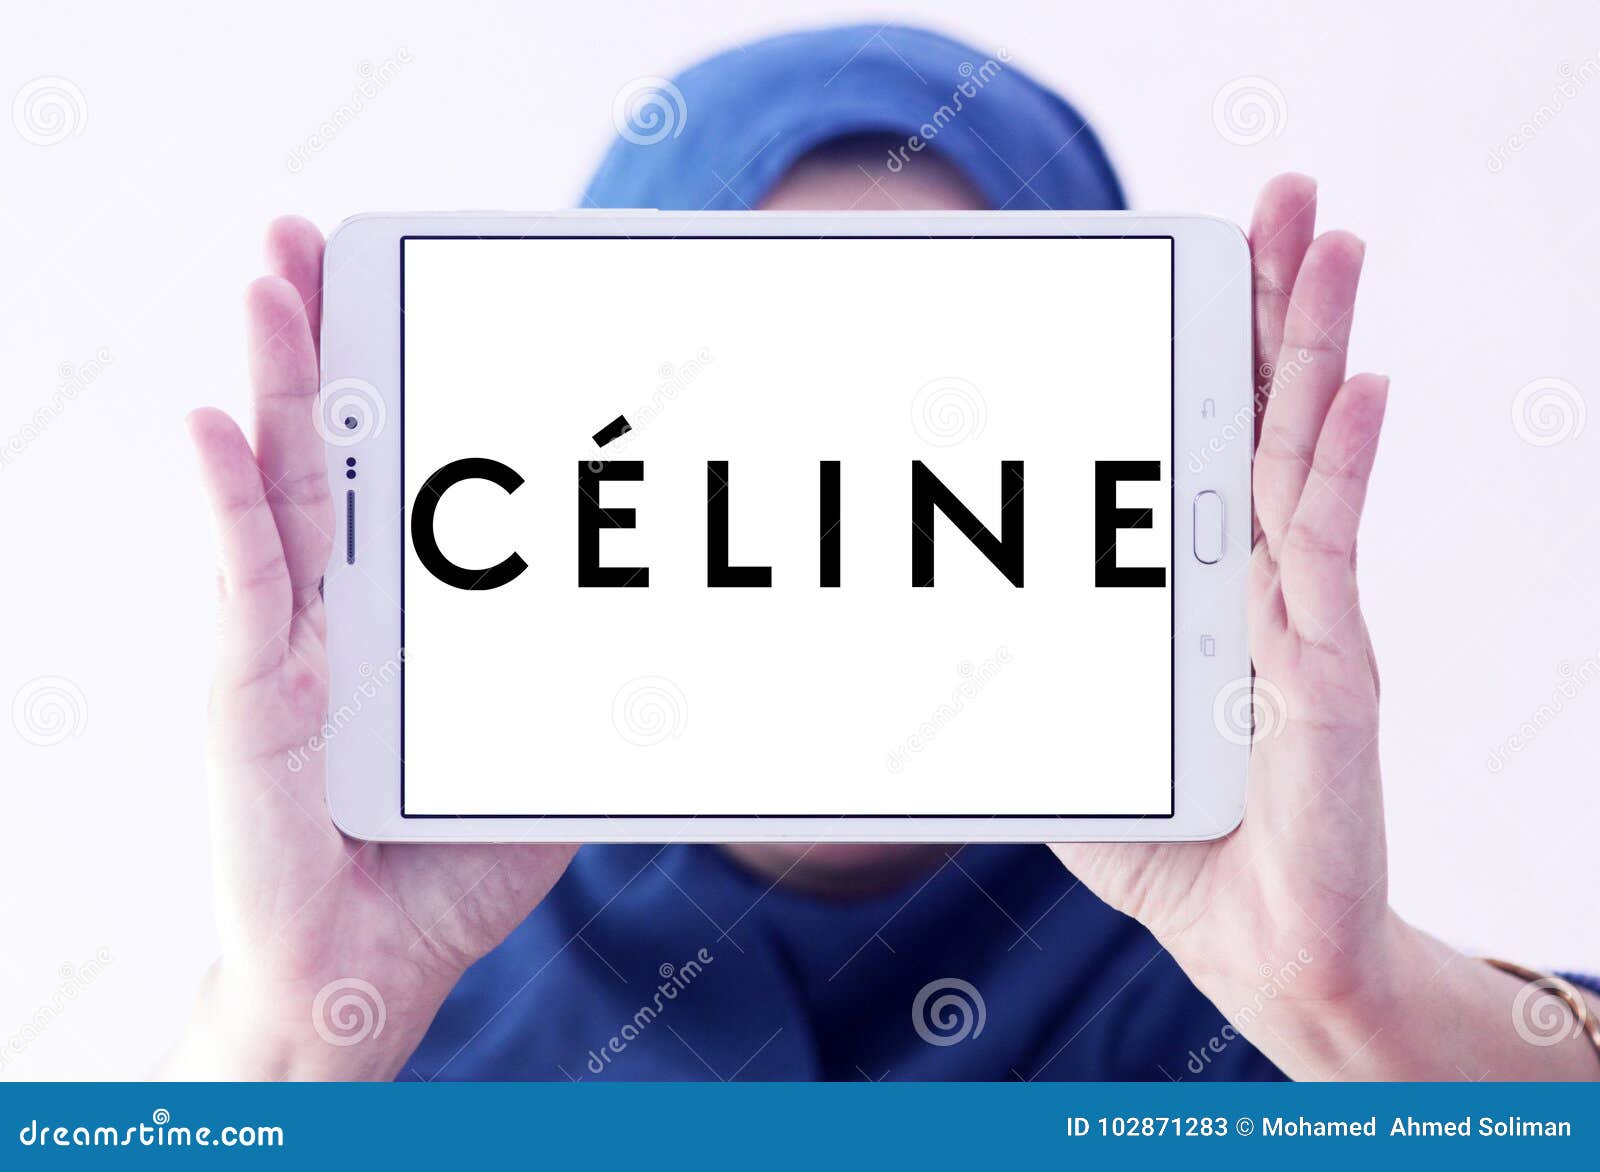 Celine (brand) - Wikipedia